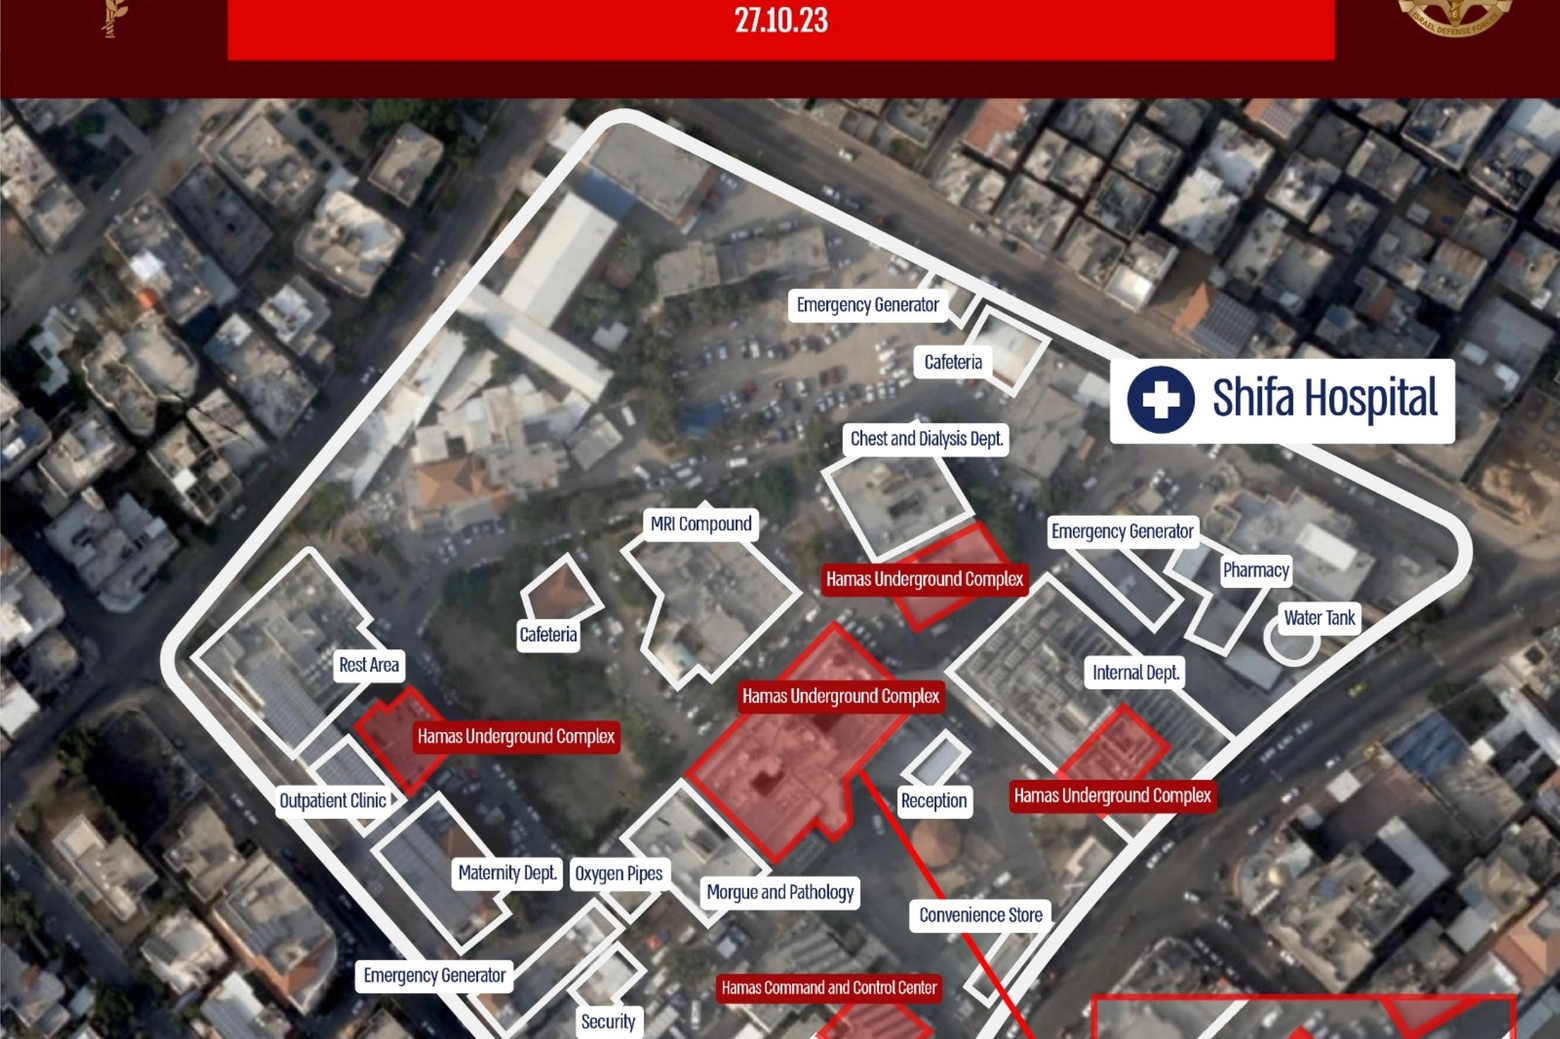 Ospedale di Shifa, comando centrale di Hamas secondo Israele (Ansa)